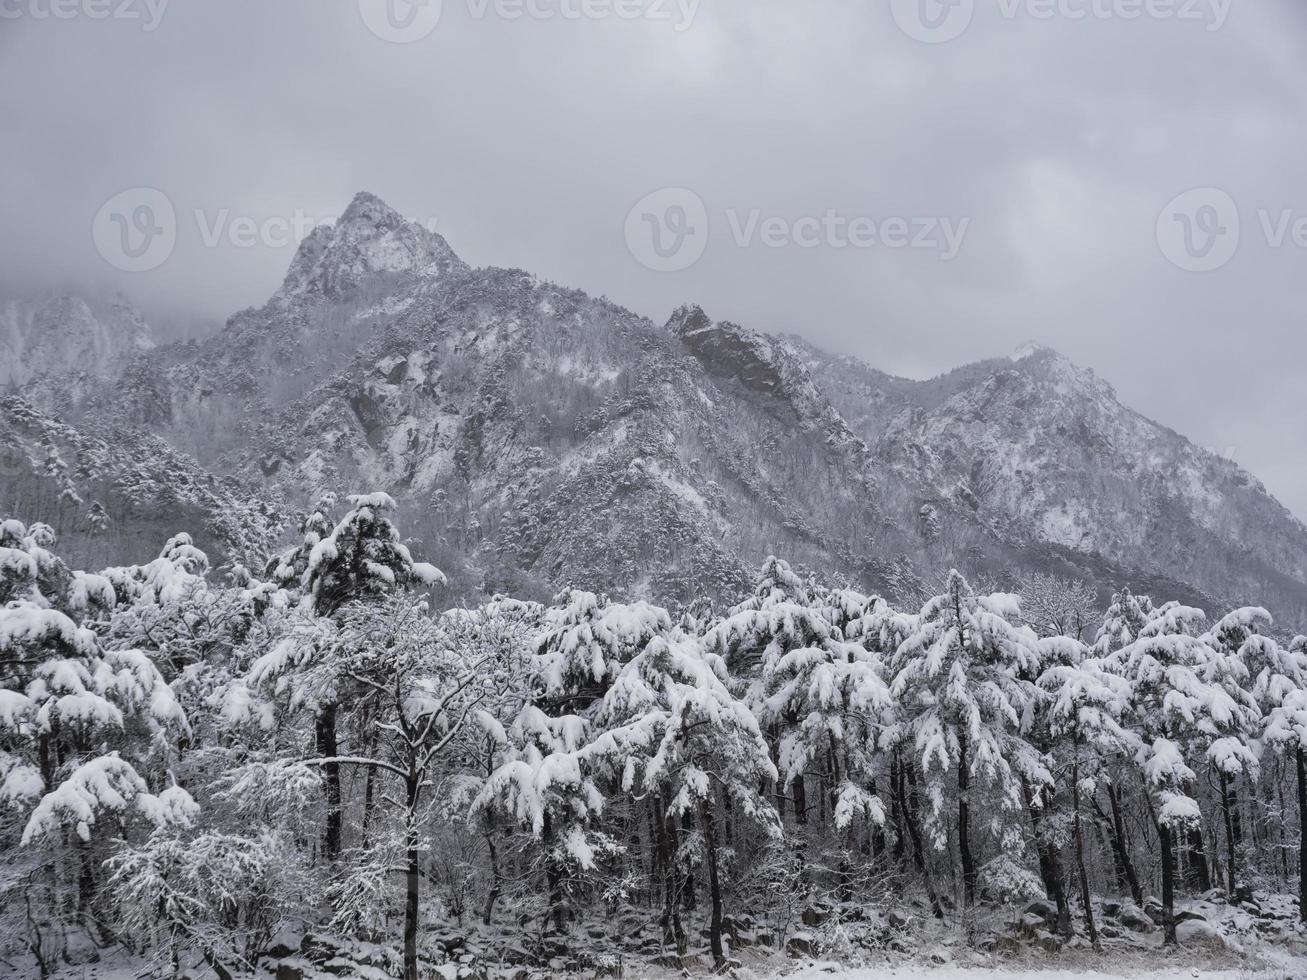 tallskog under snön och stora berg i bakgrunden. Seoraksan National Park, Sydkorea. vintern 2018 foto